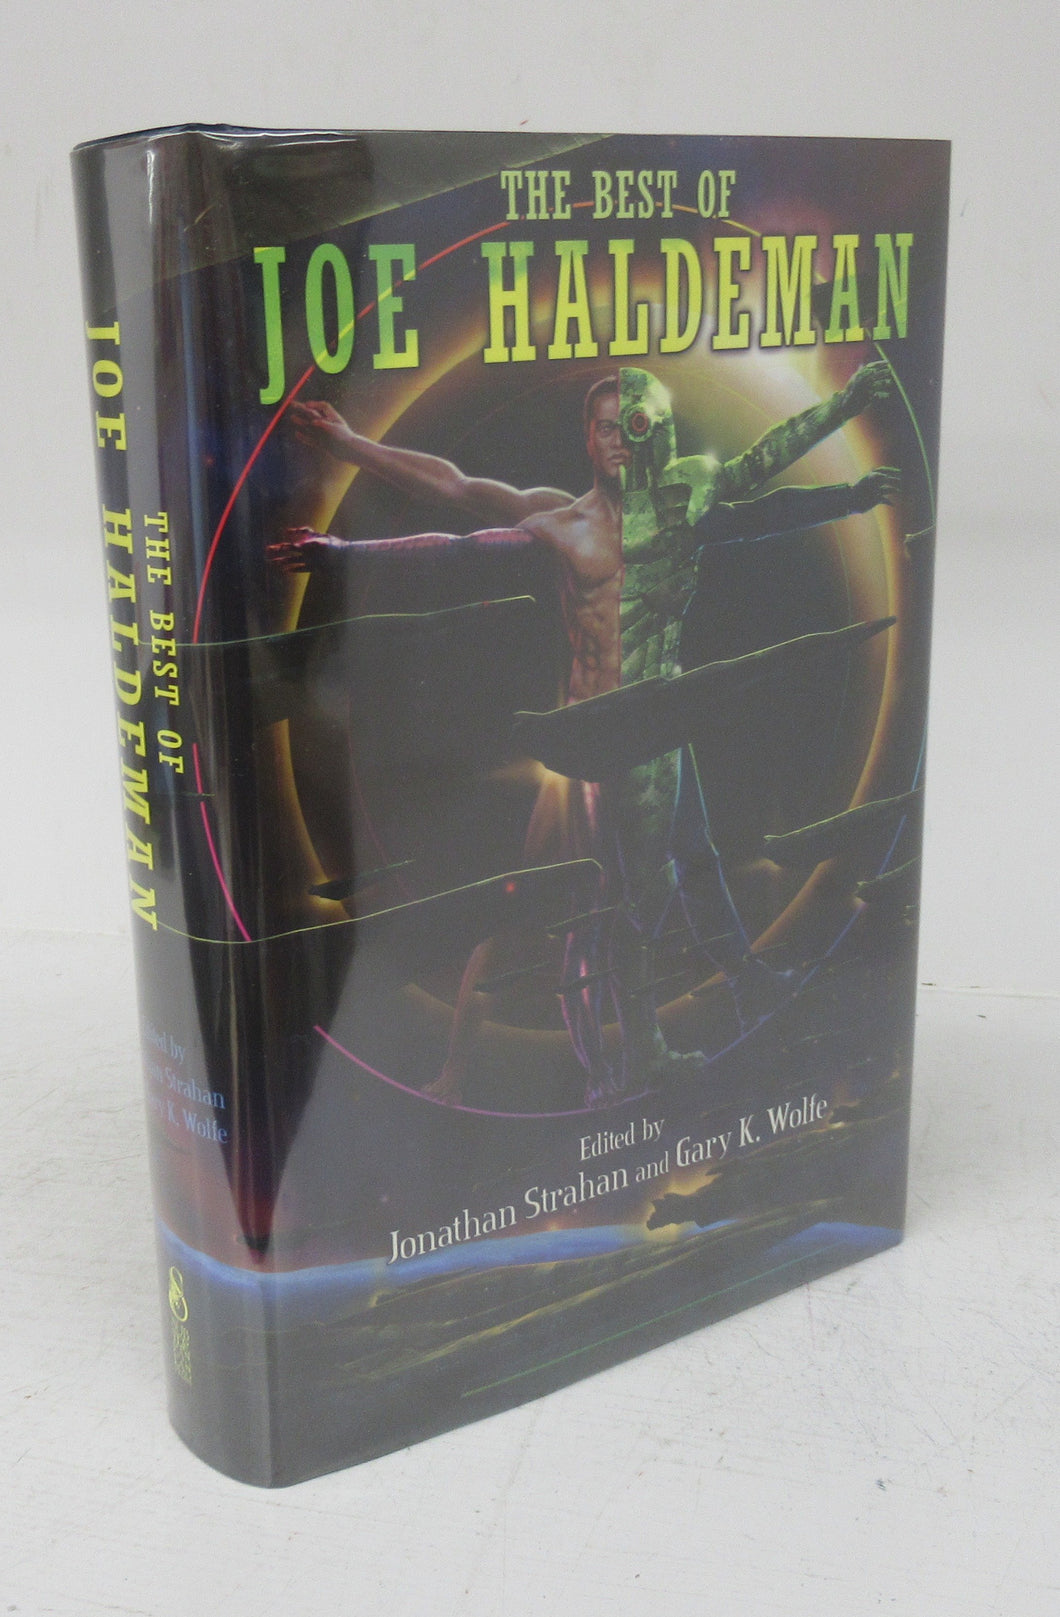 The Best of Joe Haldeman